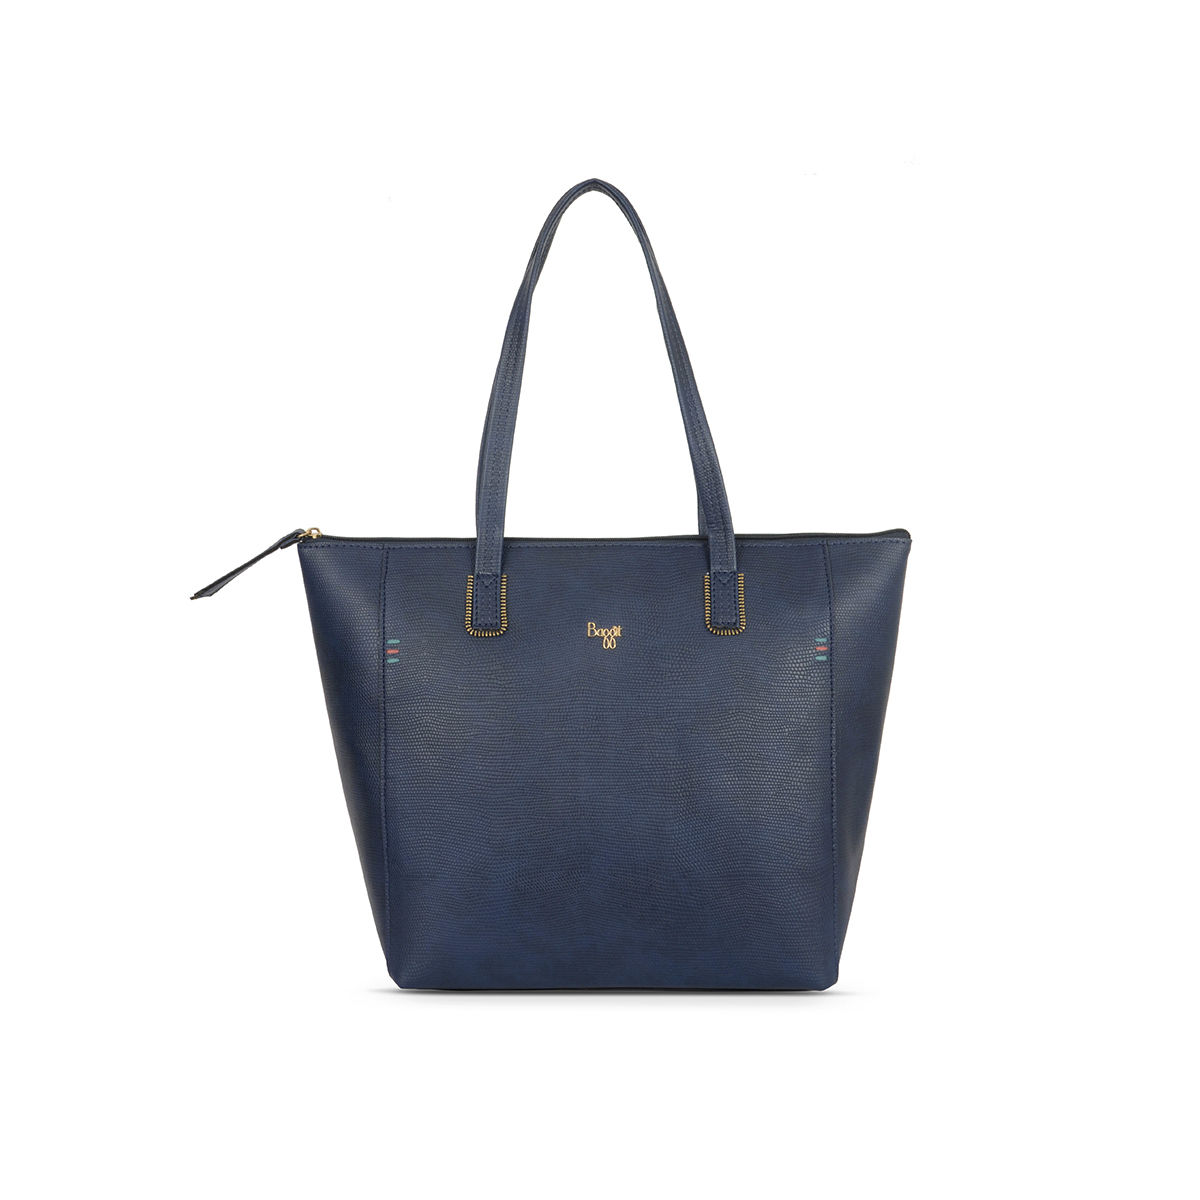 Etienne Aigner bag, Vintage 70s purse, blue leather handbag, Navy Blue purse,  1970s Shoulder Bag, blue leather Satchel, fold over handbag,